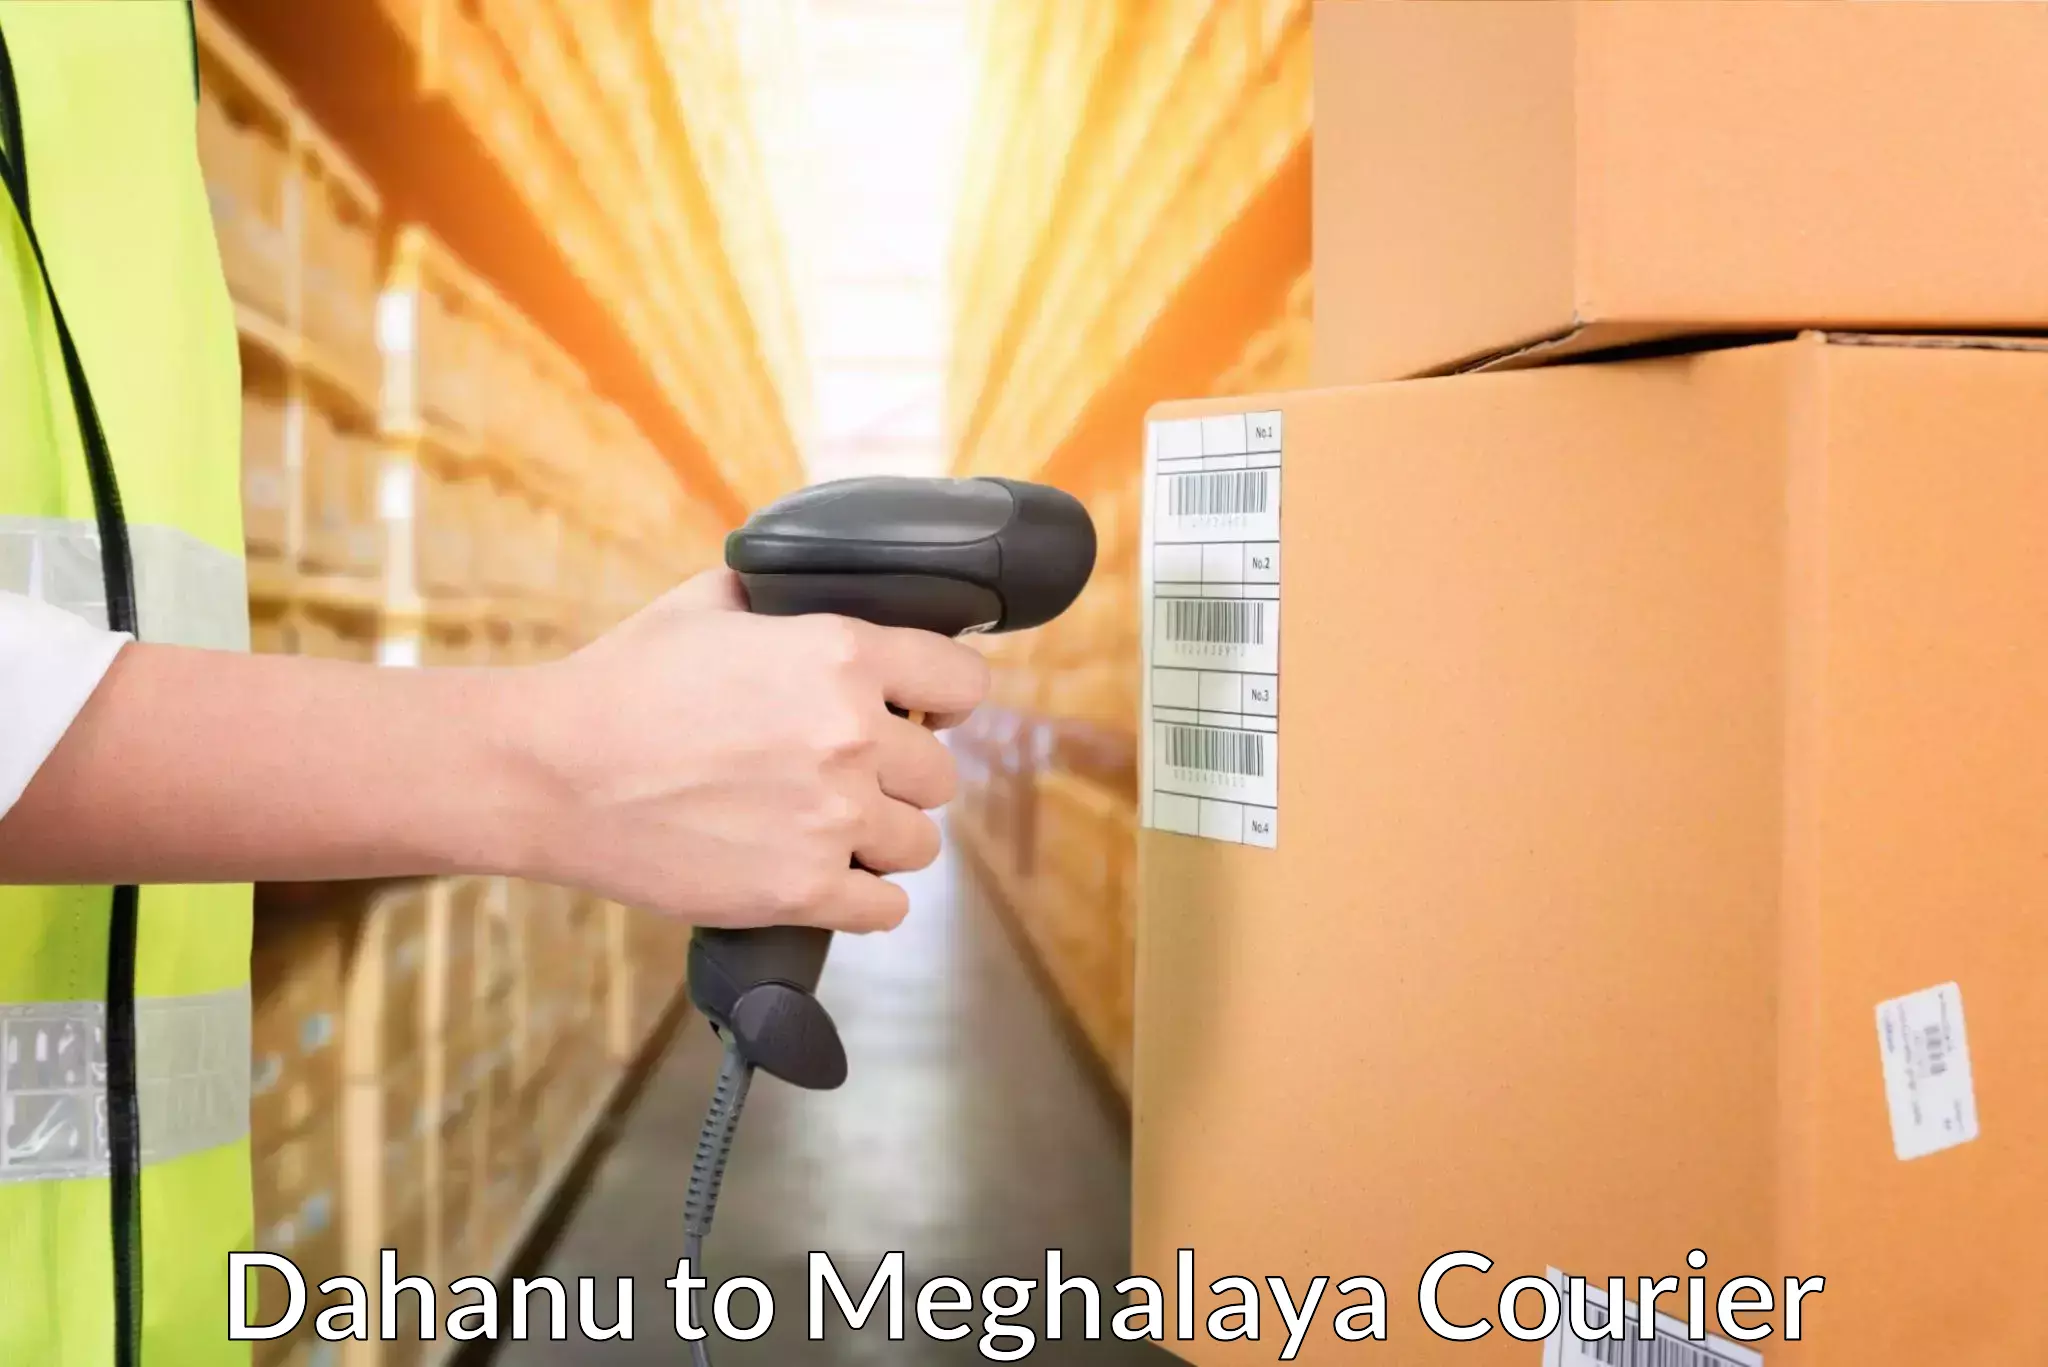 Express mail solutions Dahanu to Meghalaya